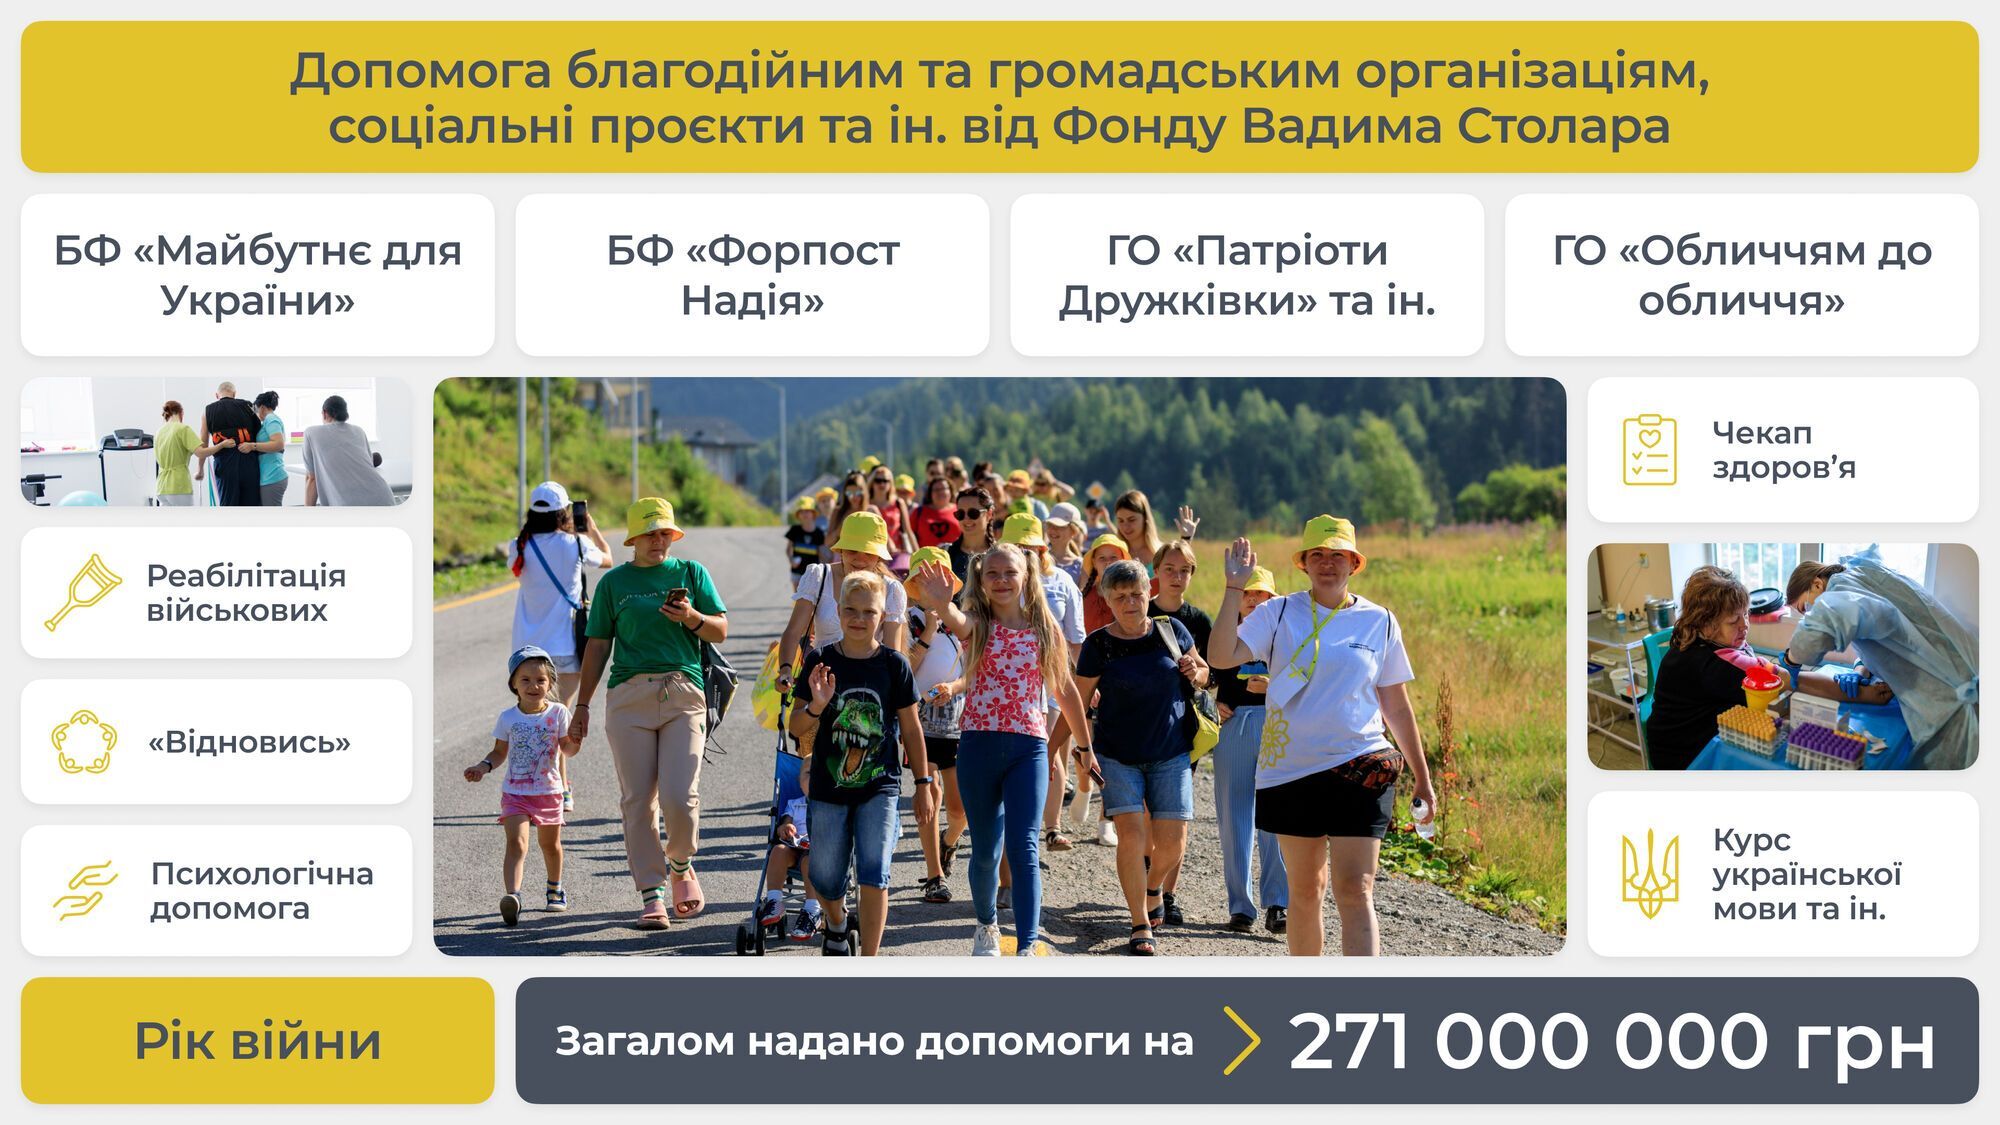 Благотворительный фонд Вадима Столара за год войны оказал помощь на 271 млн грн